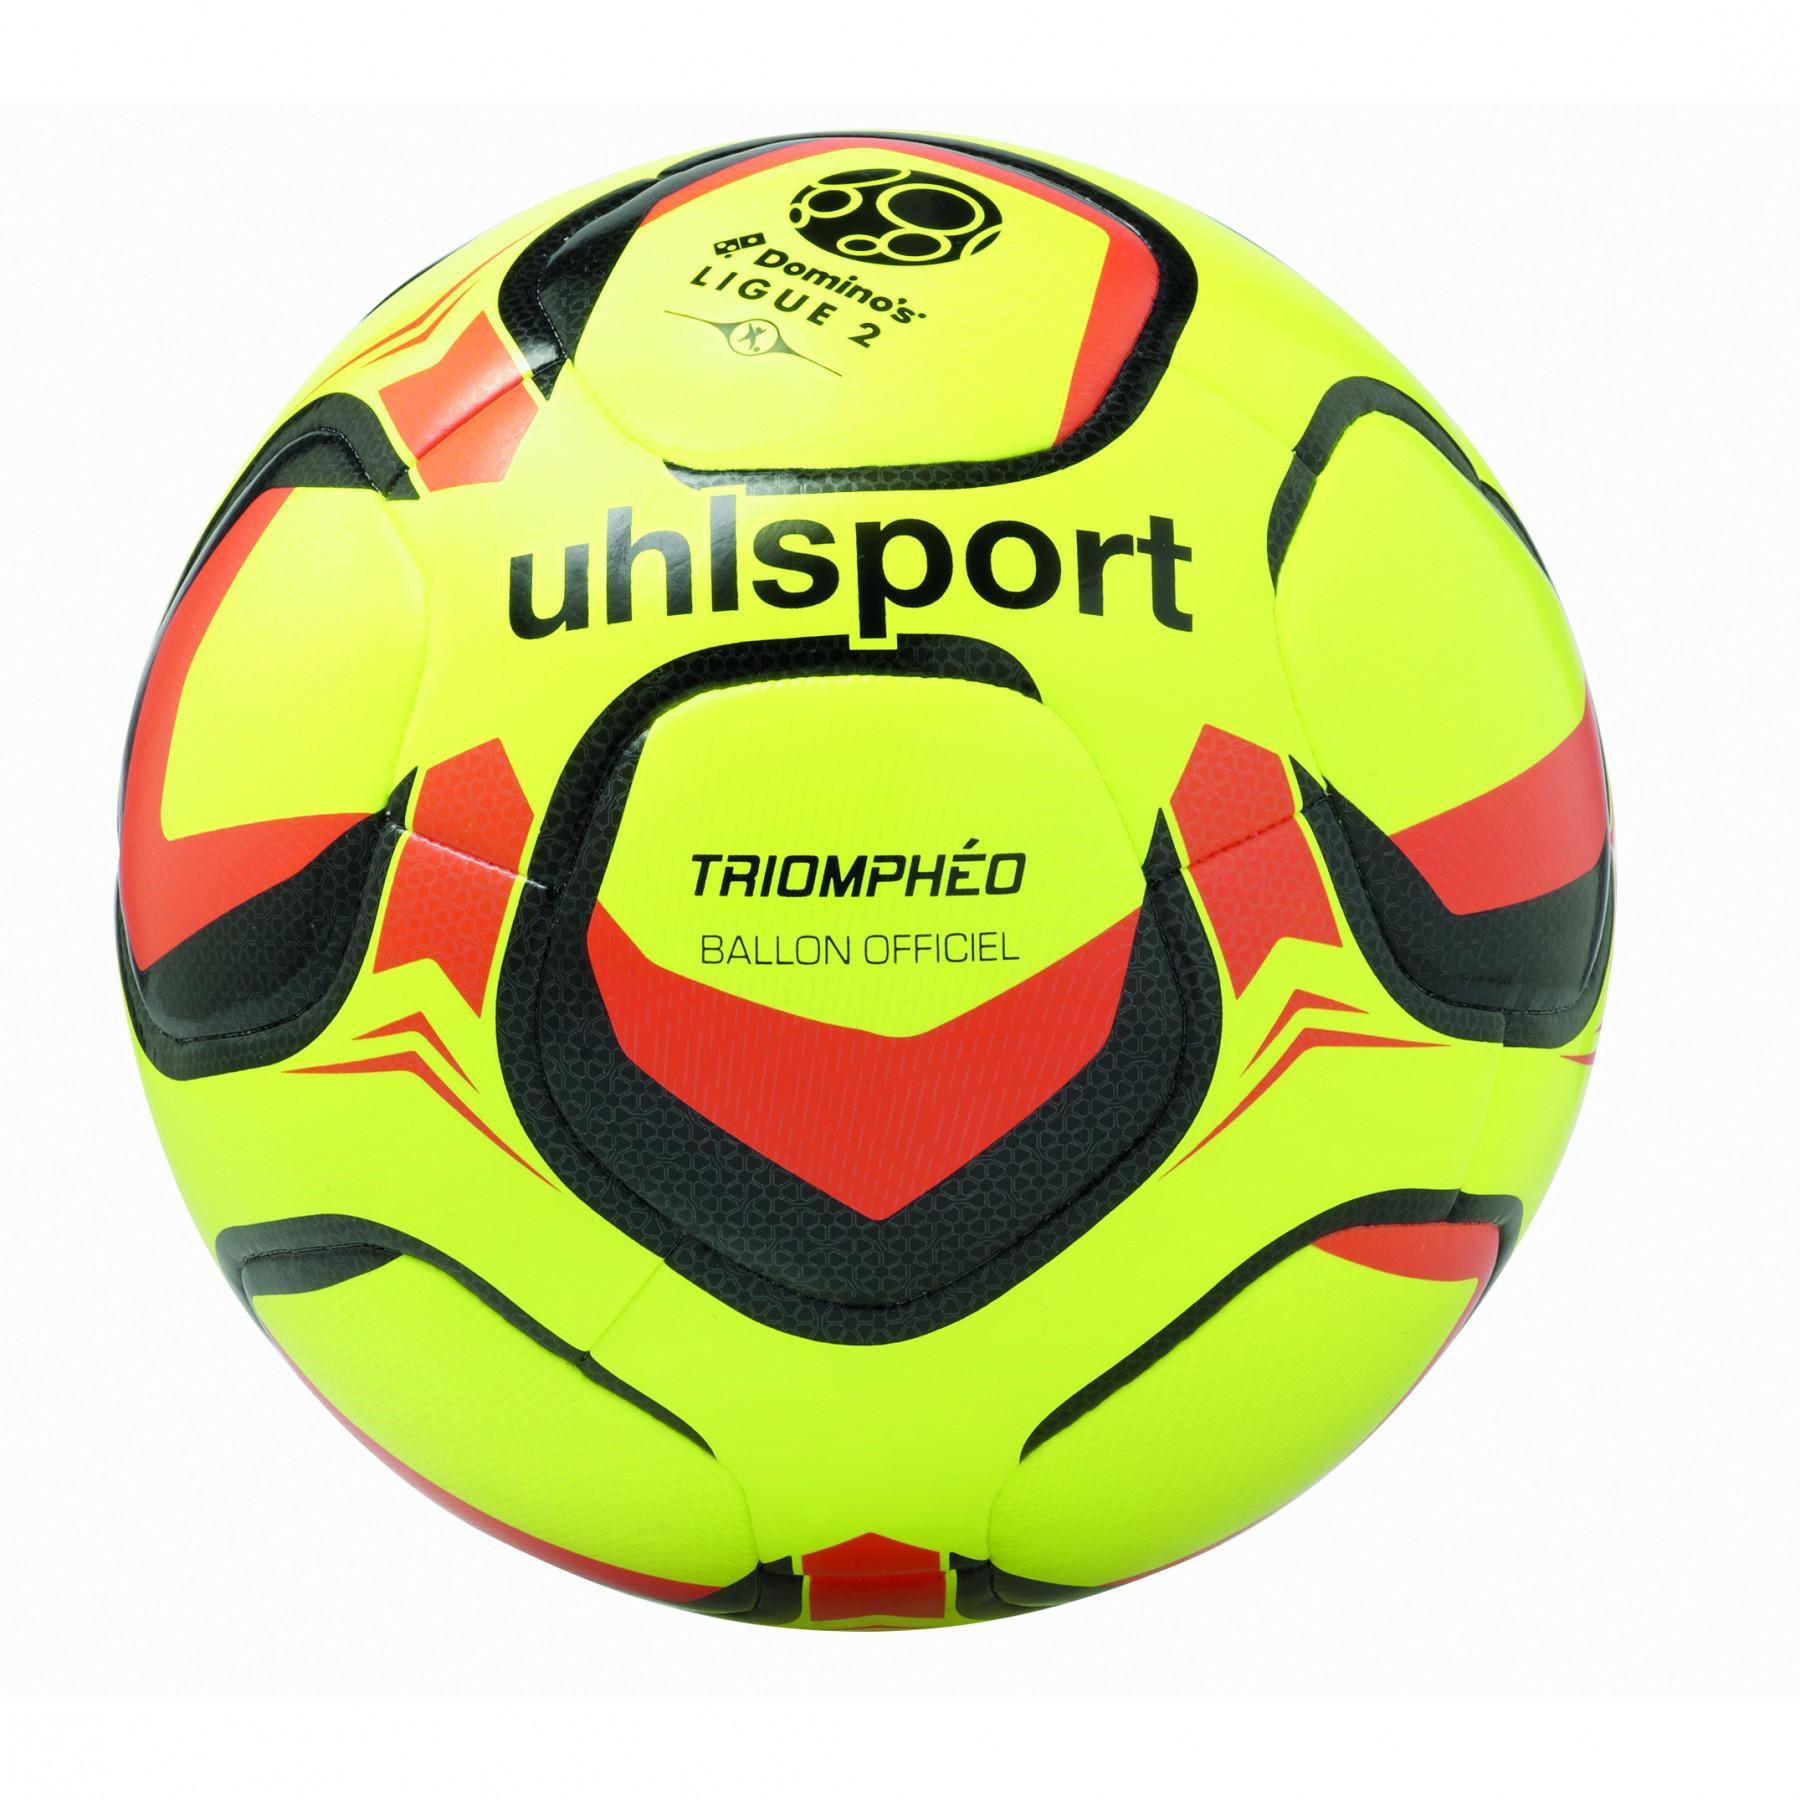 Official ball Ligue 2 Uhlsport Triomphéo